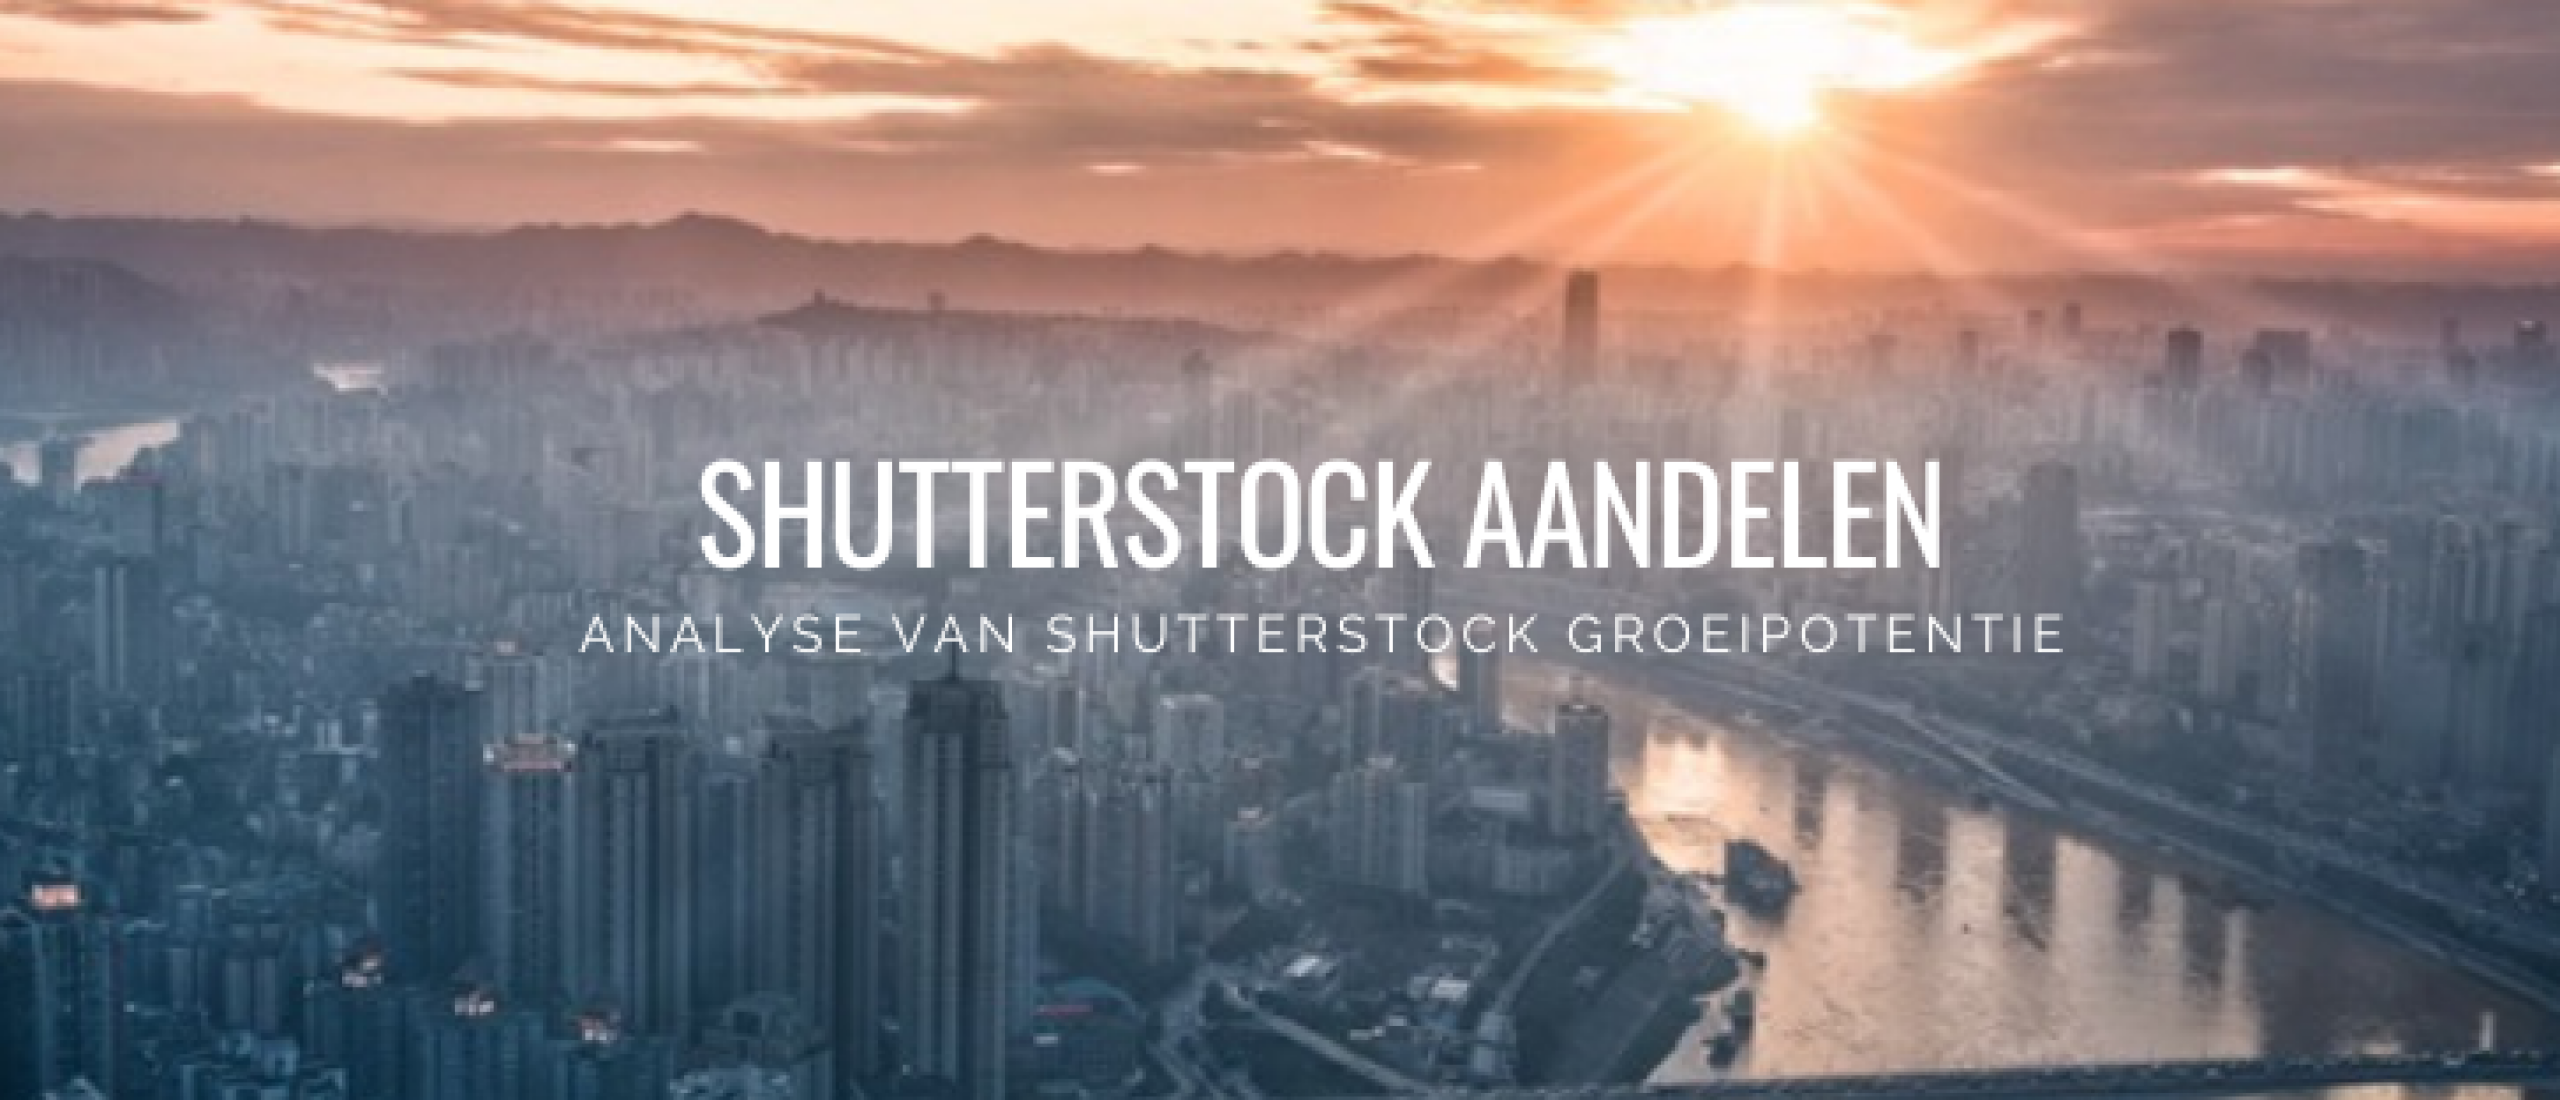 shutterstock-aandelen